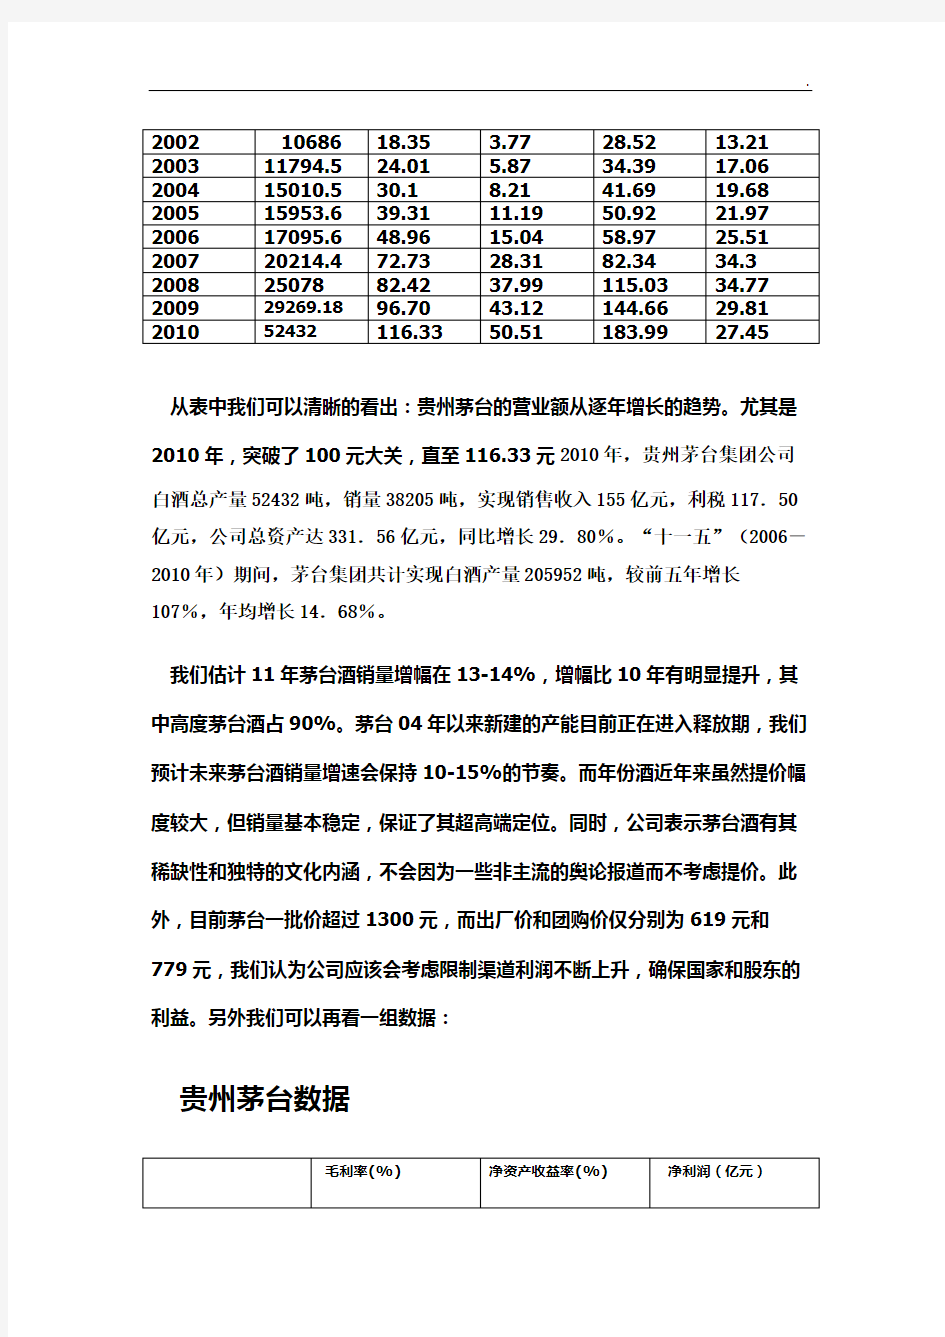 贵州茅台公司投资分析报告